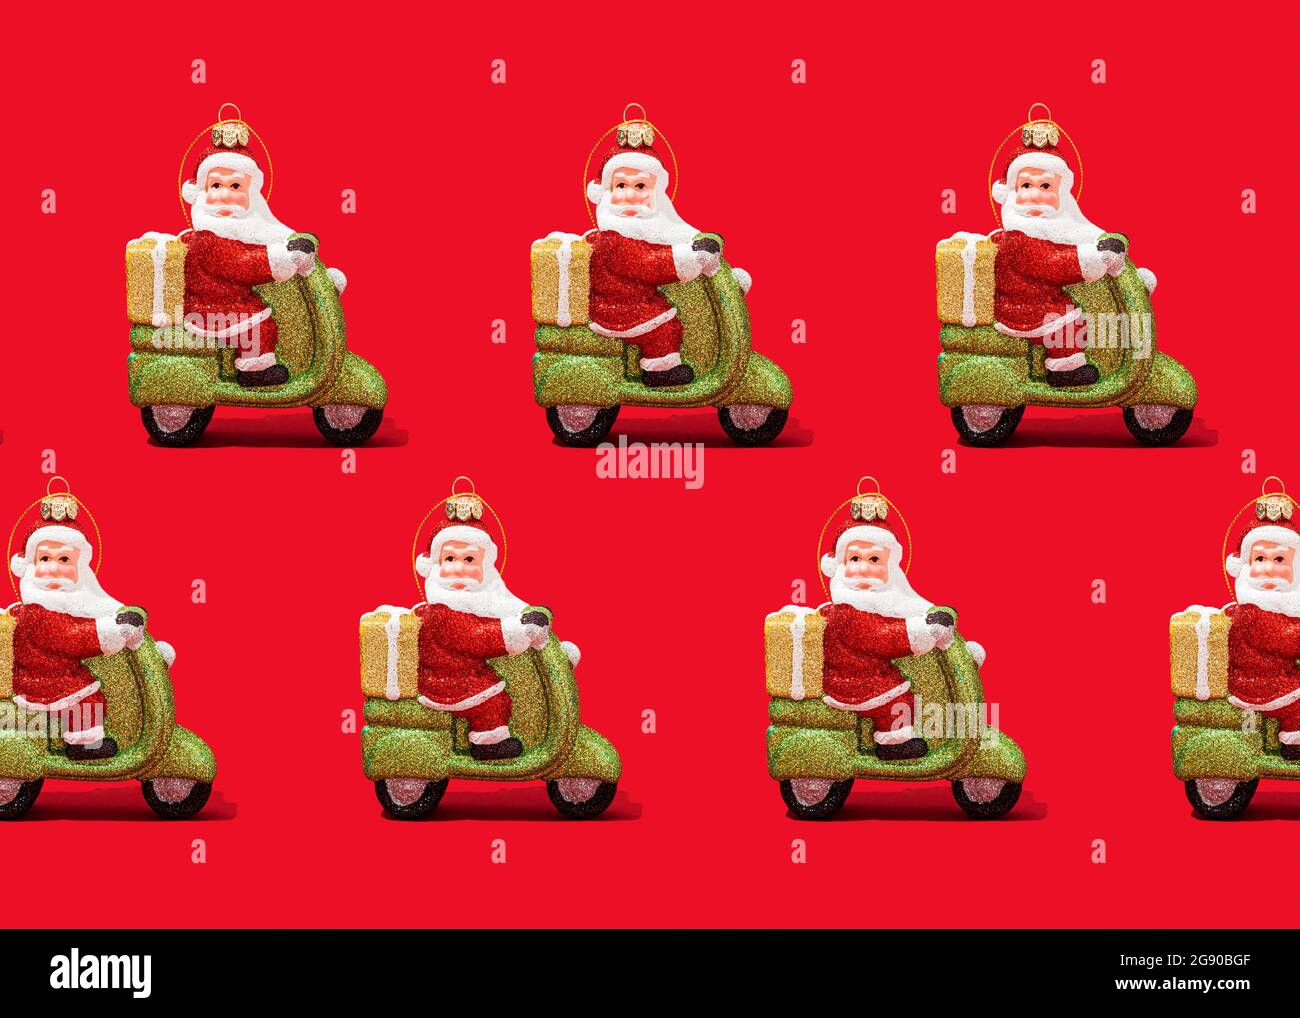 Motif de décorations de Noël du Père Noël sur fond rouge vif Banque D'Images